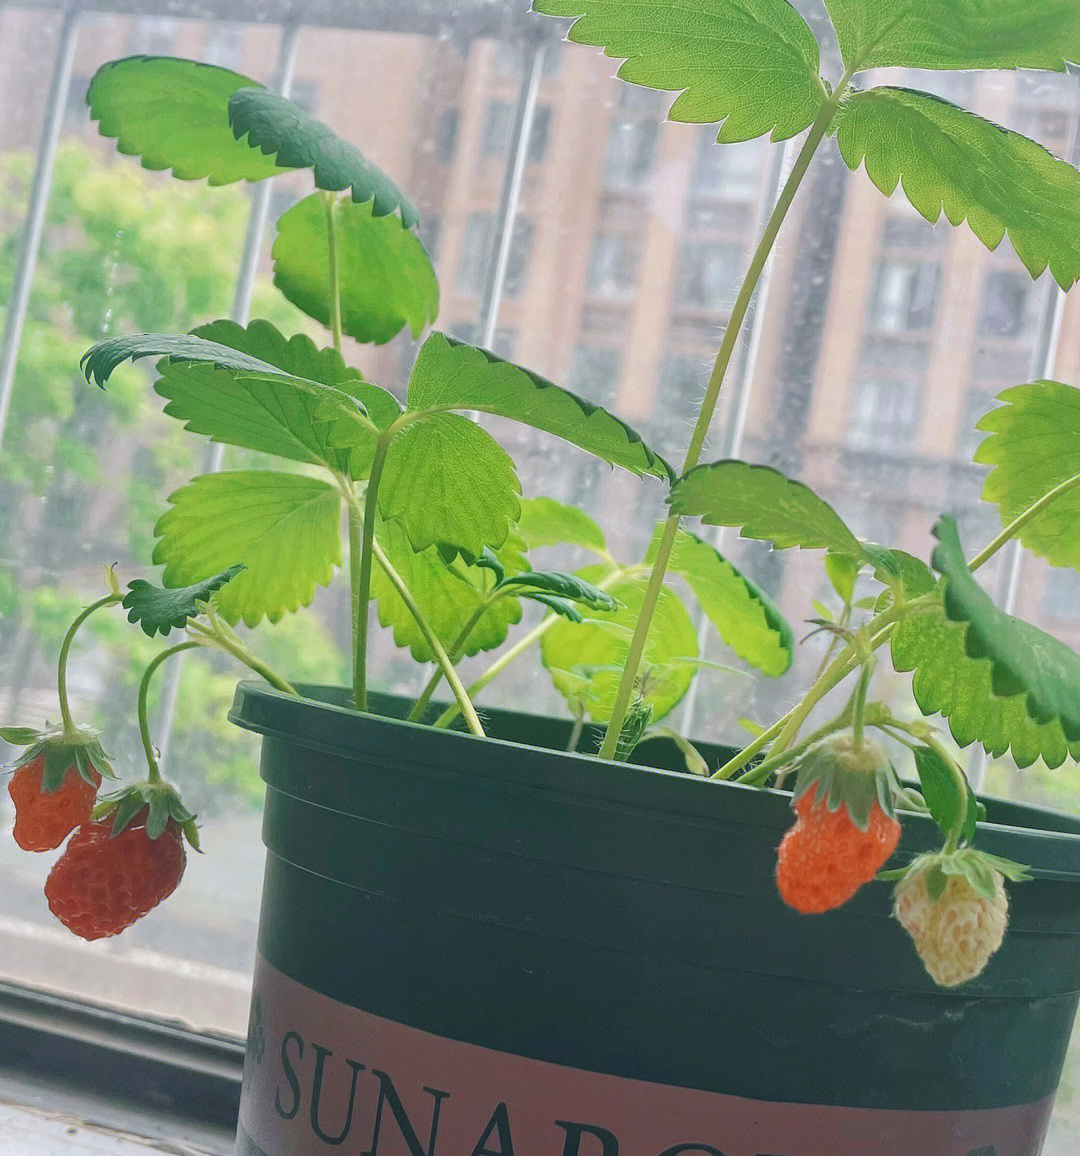 没想到野生的草莓也能长大太棒了